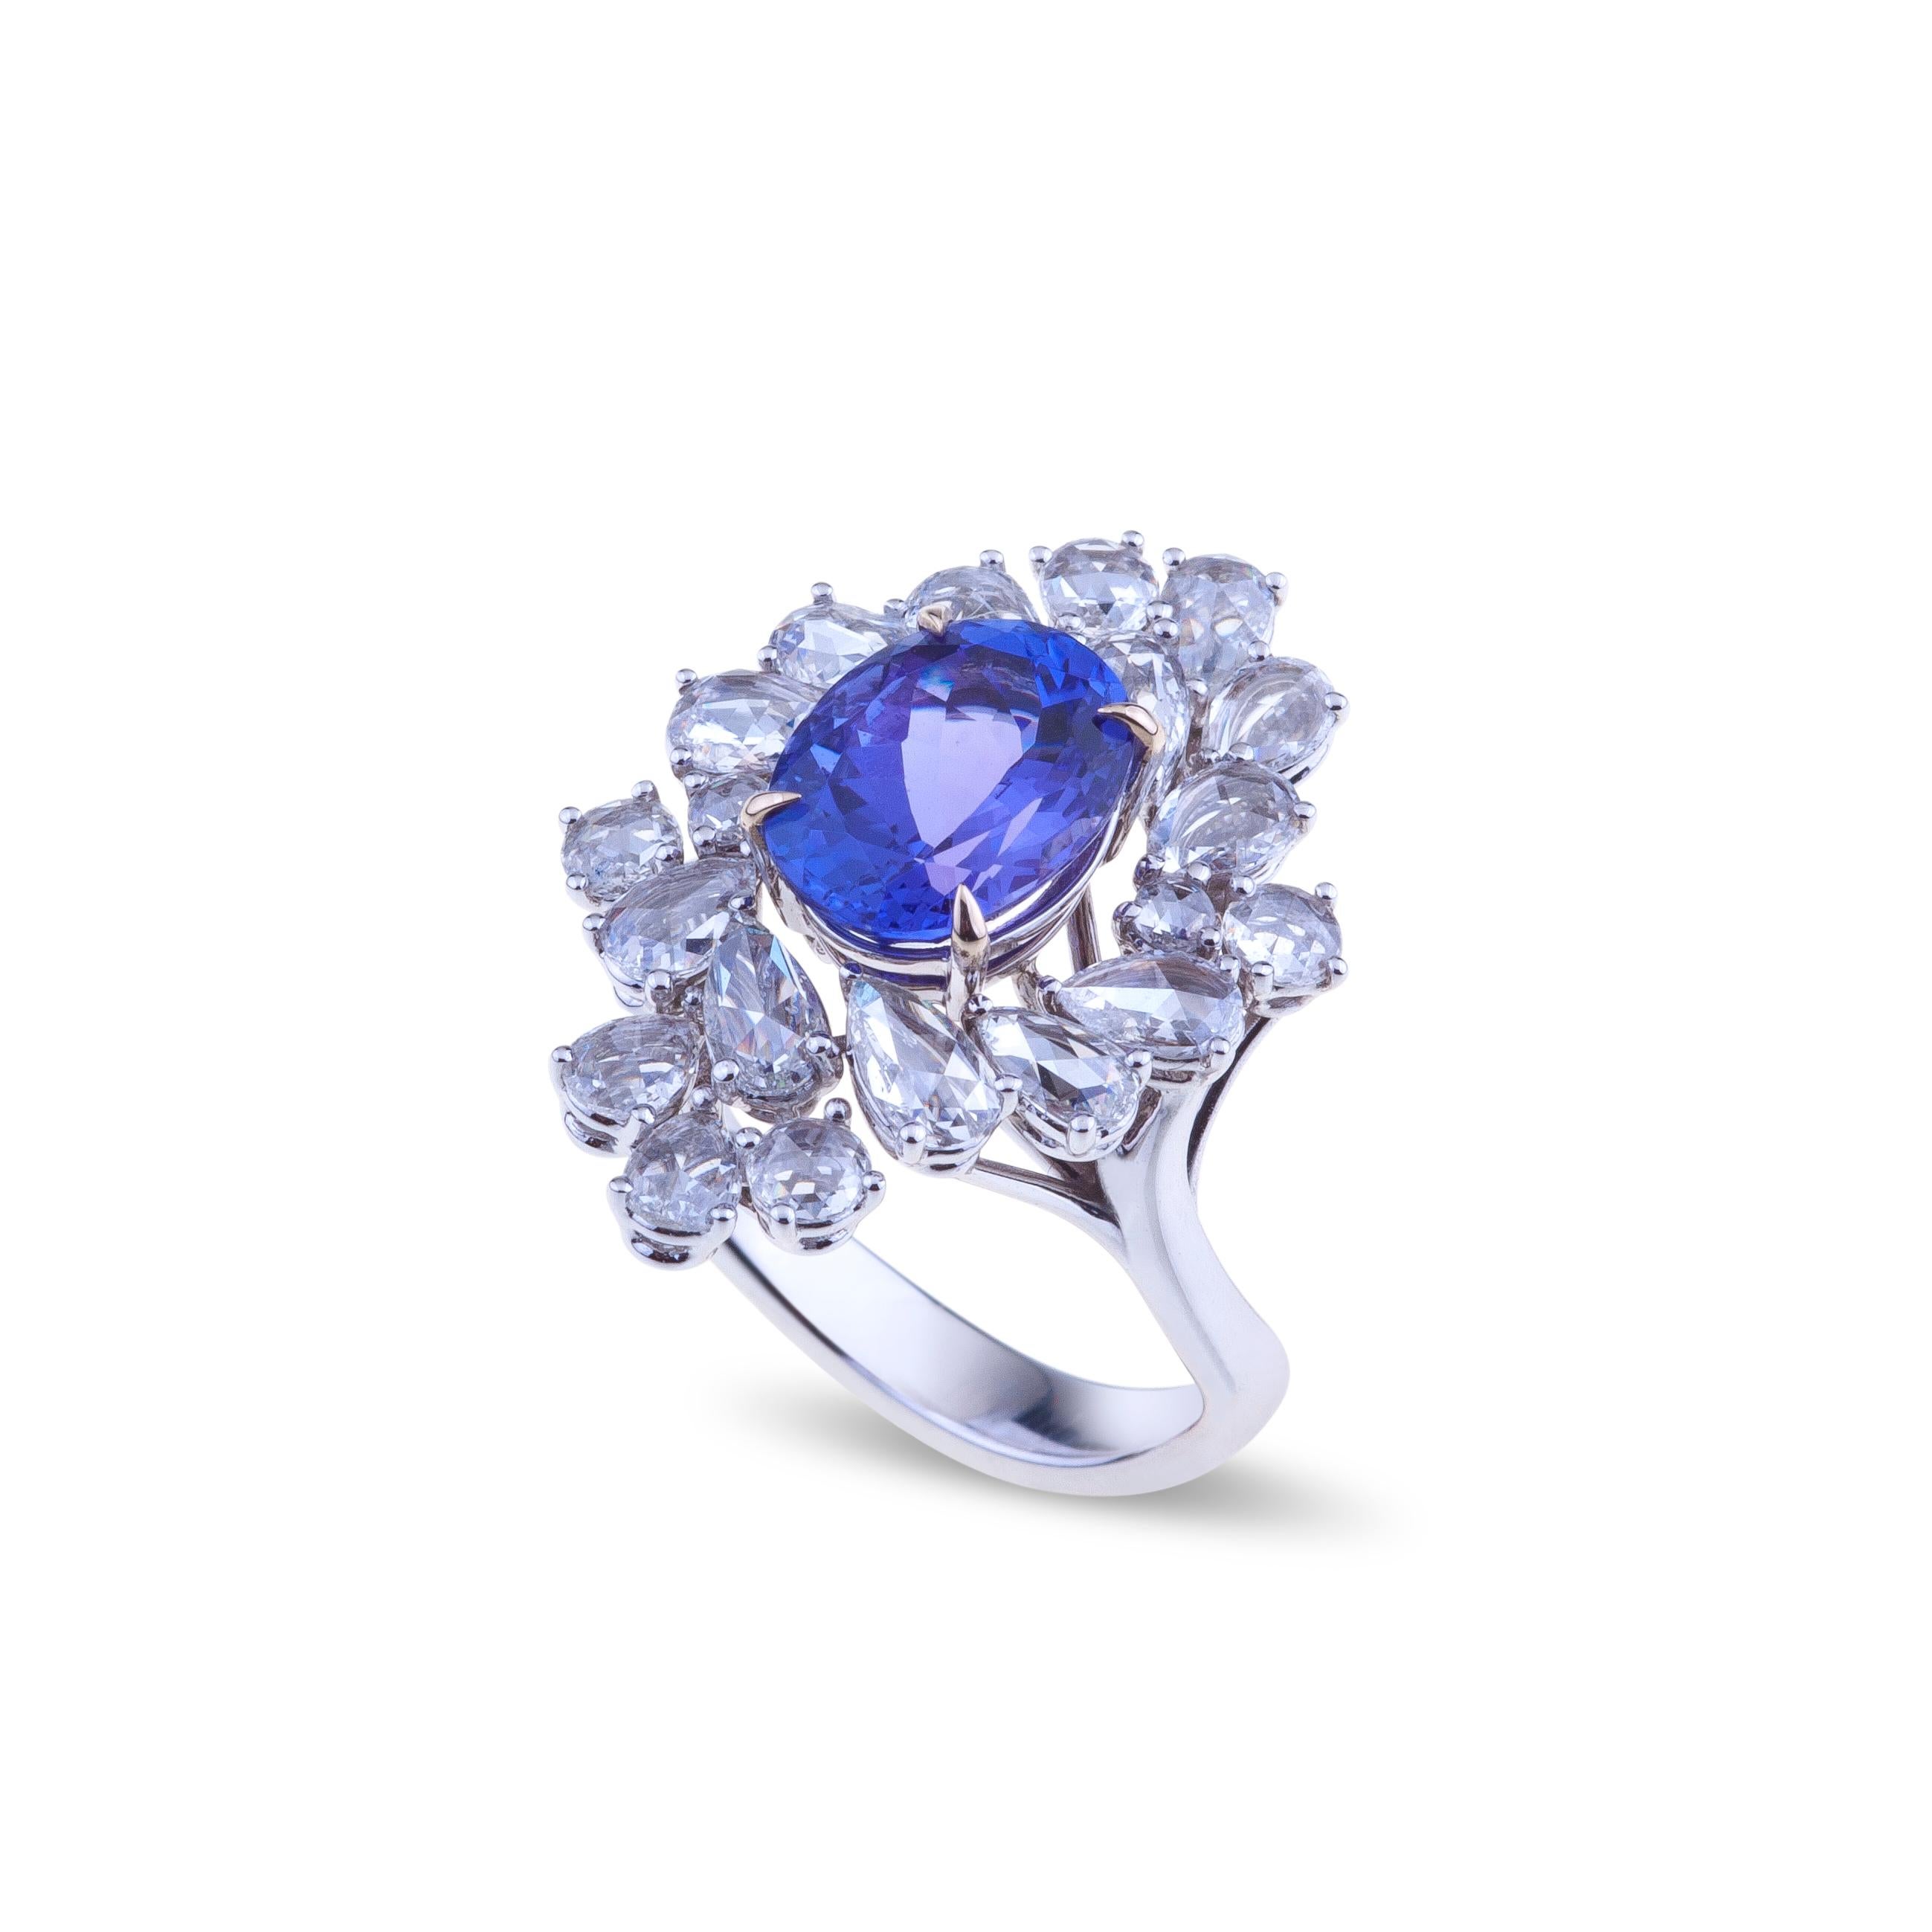 Ausgewählter Ring mit intensiv blauem Tansanit, gefasst in Weißgold mit Diamanten.
Ein einzigartiger Ring aus Weißgold  mit einem ausgewählten intensiv blauen Tansanit ct. 3,43 facettierten Ovalschliff und Diamanten ct. 1,88 VVS, die eine perfekte